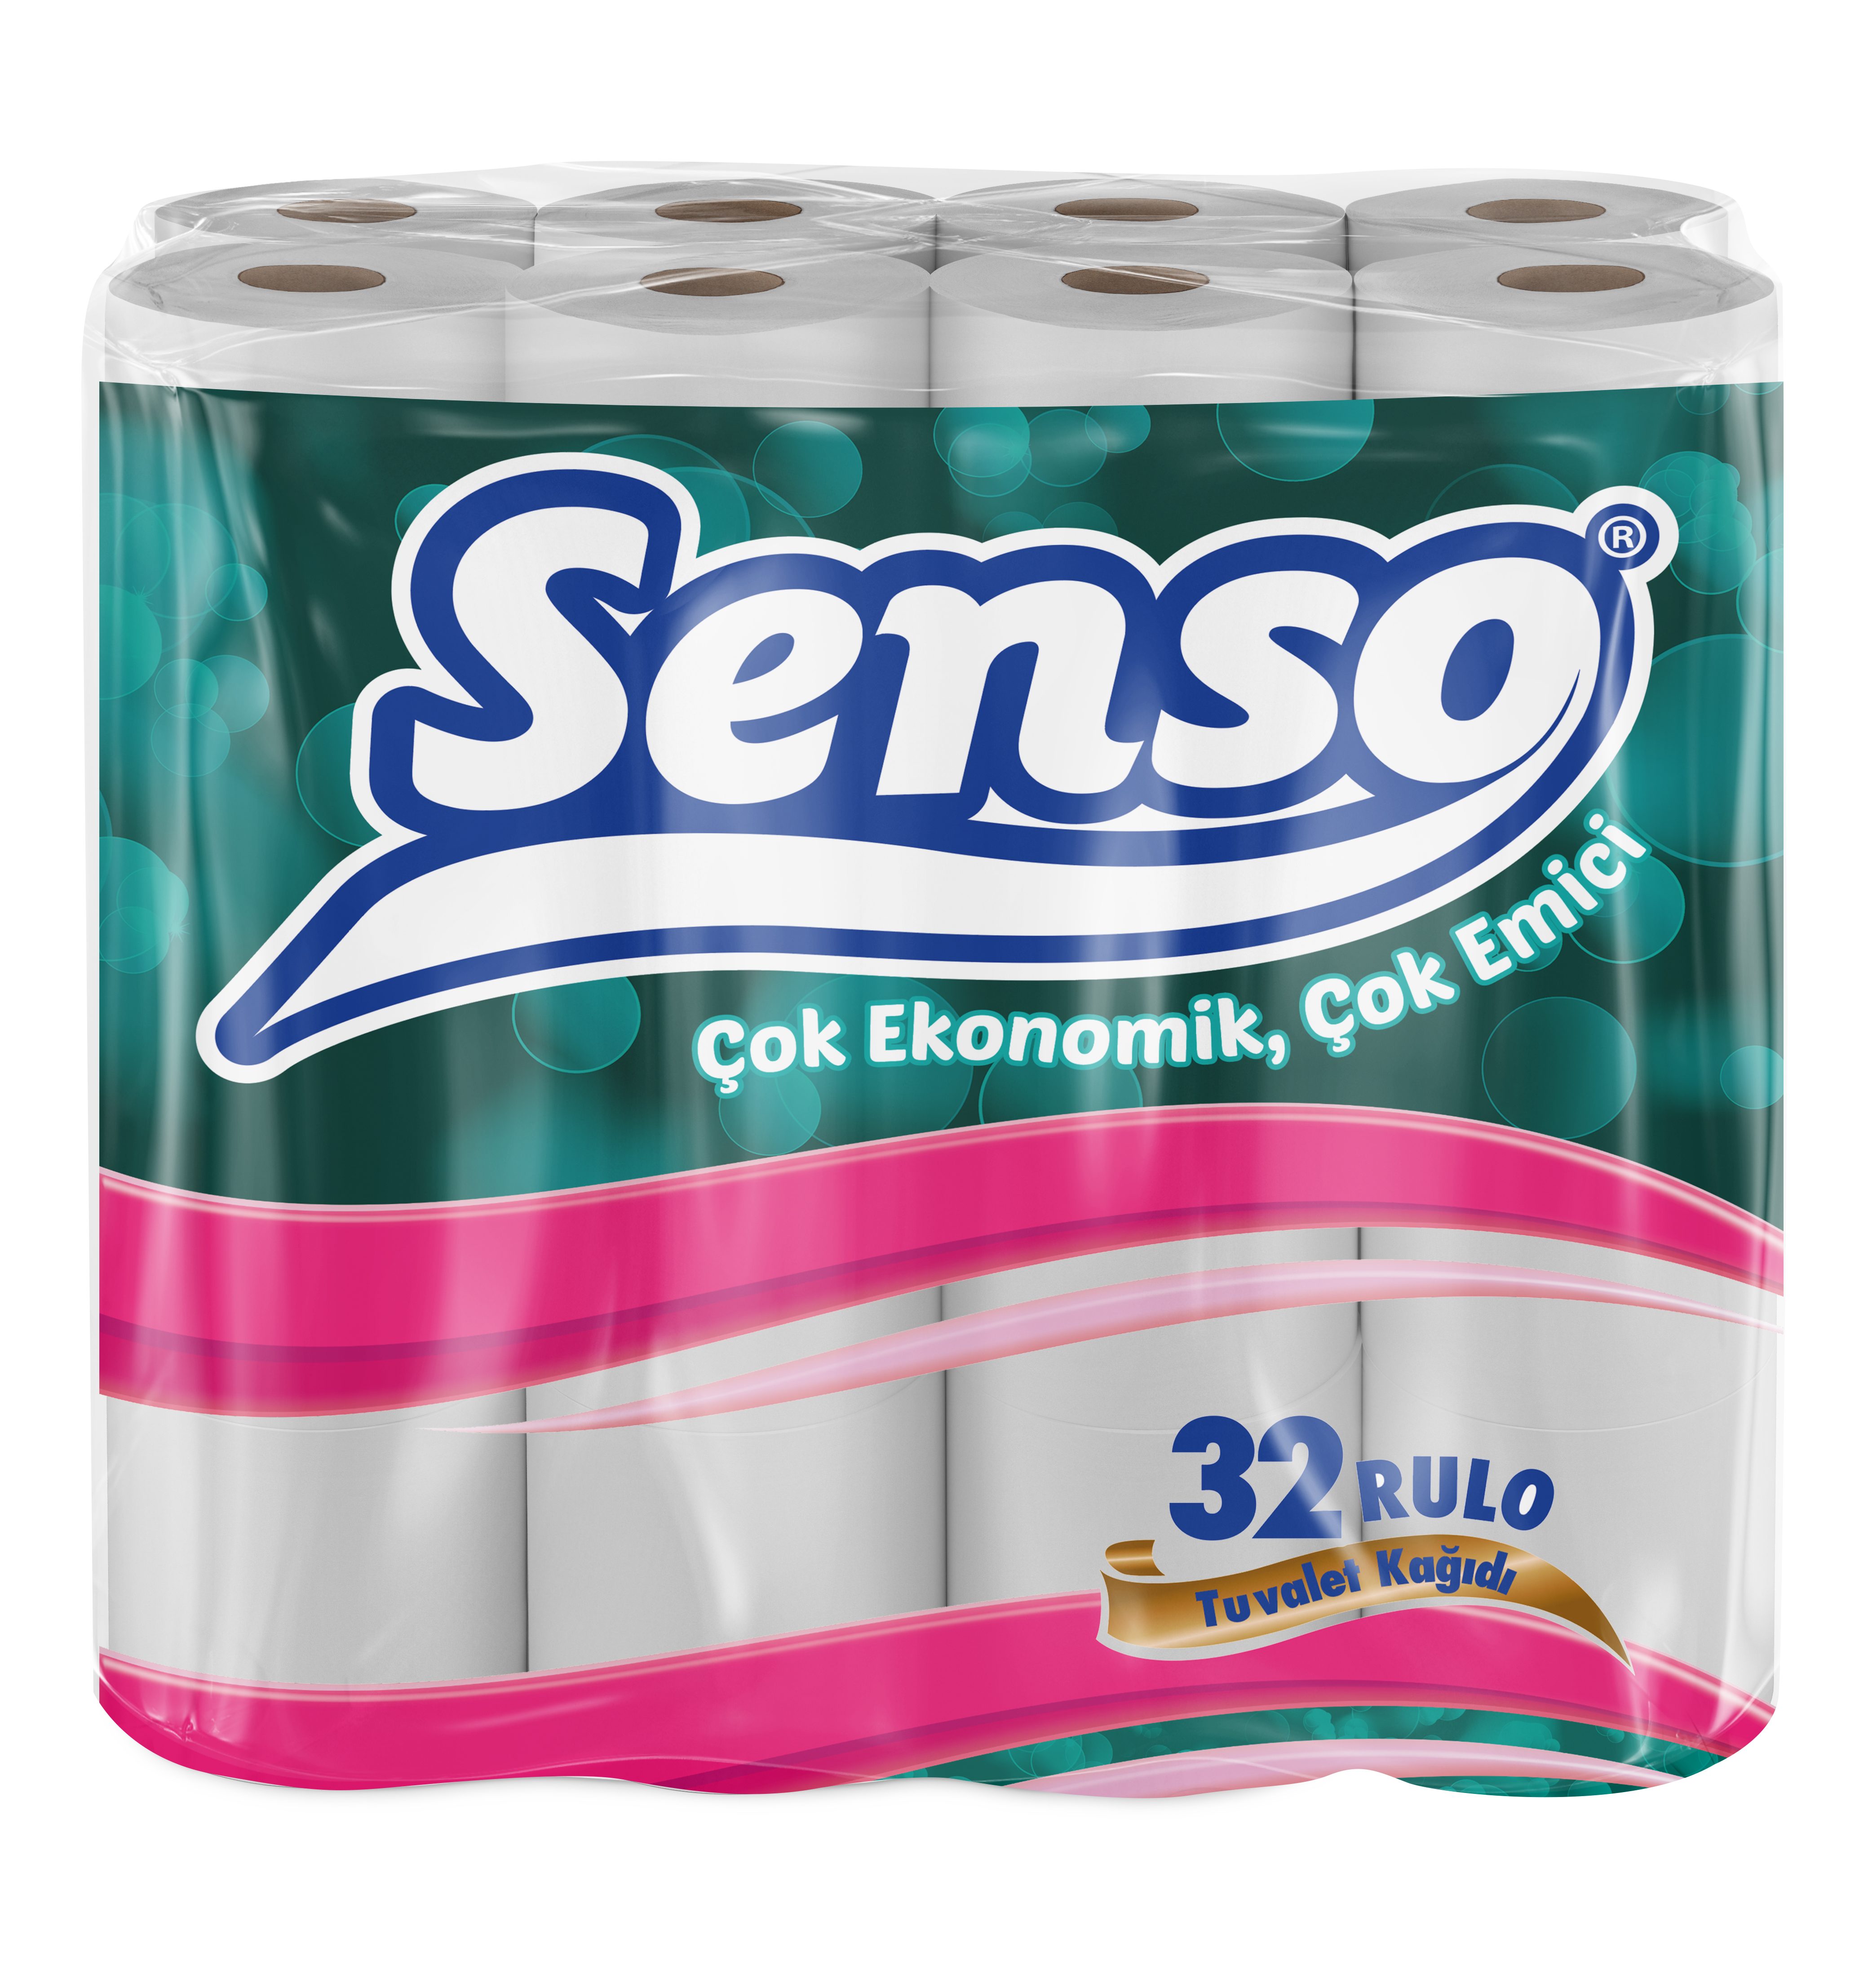 ტუალეტის ქაღალდი სენსო